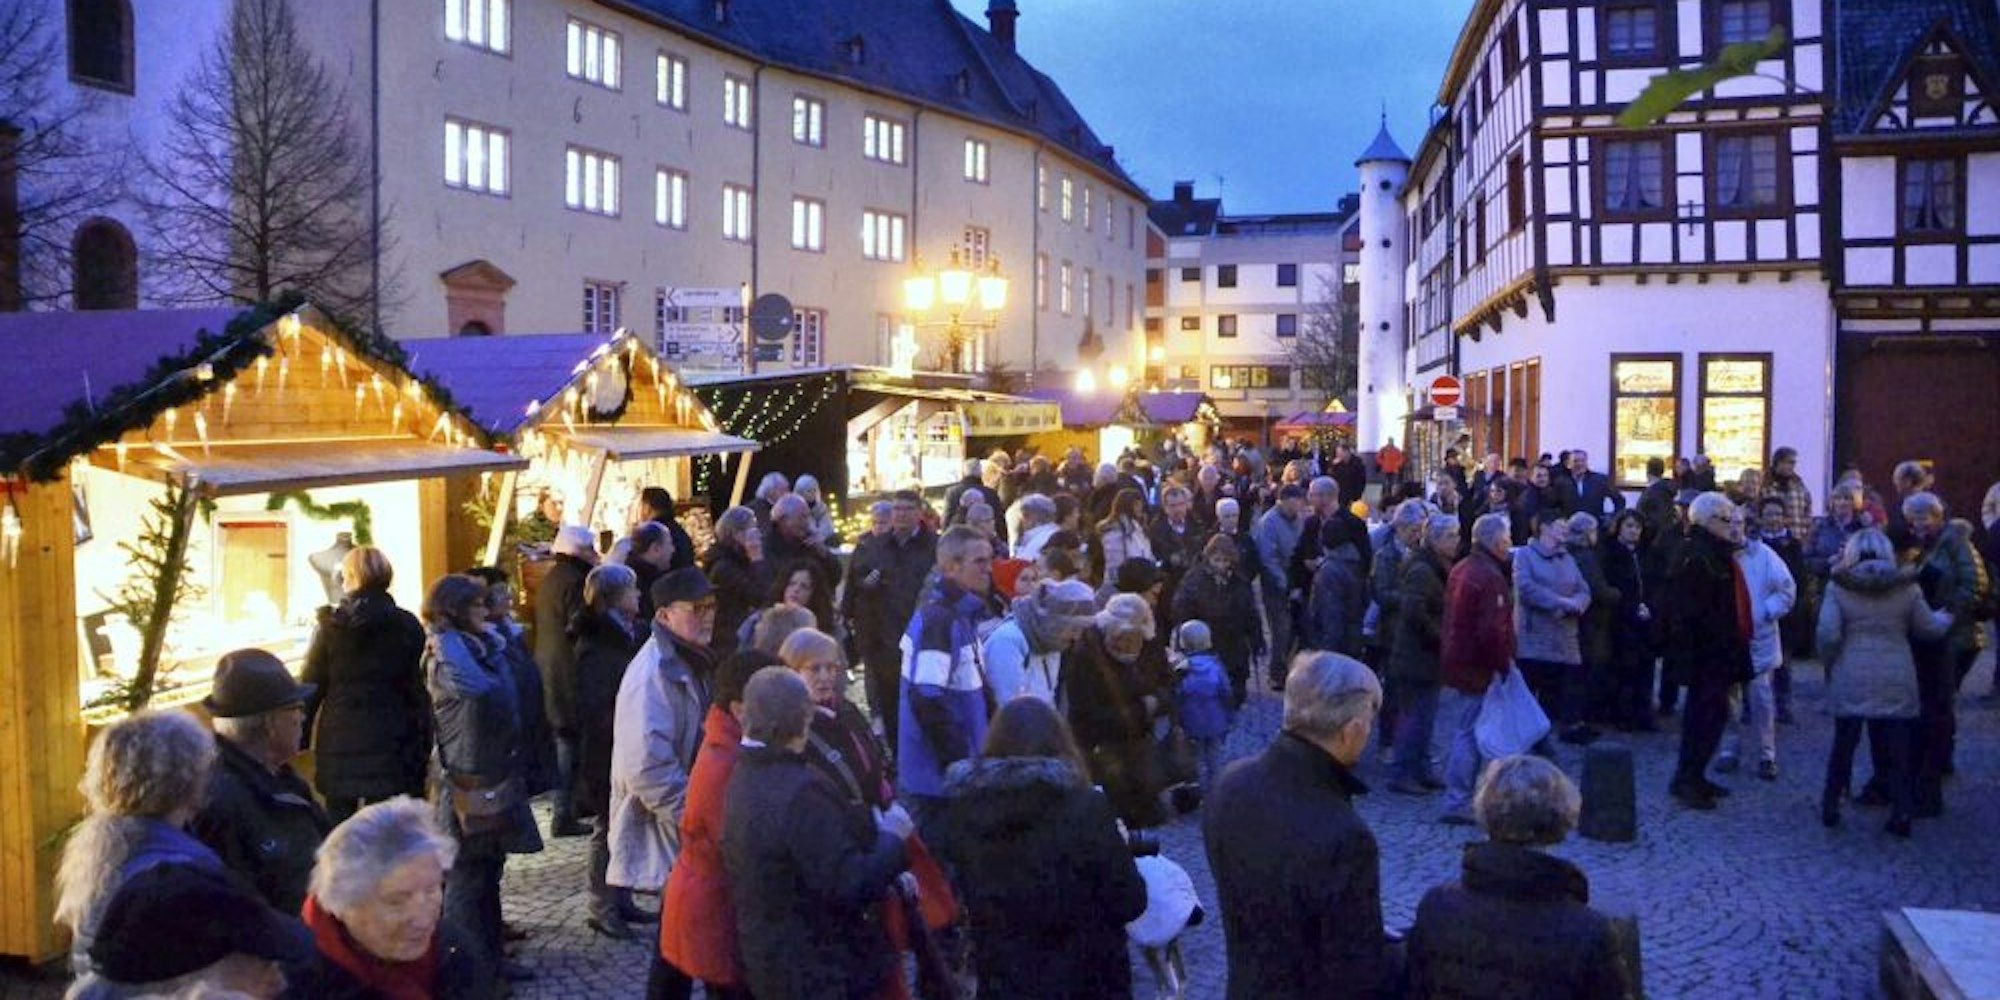 Beliebt und sehr gut frequentiert war der Bad Münstereifeler Weihnachtsmarkt in den vergangenen Jahren.